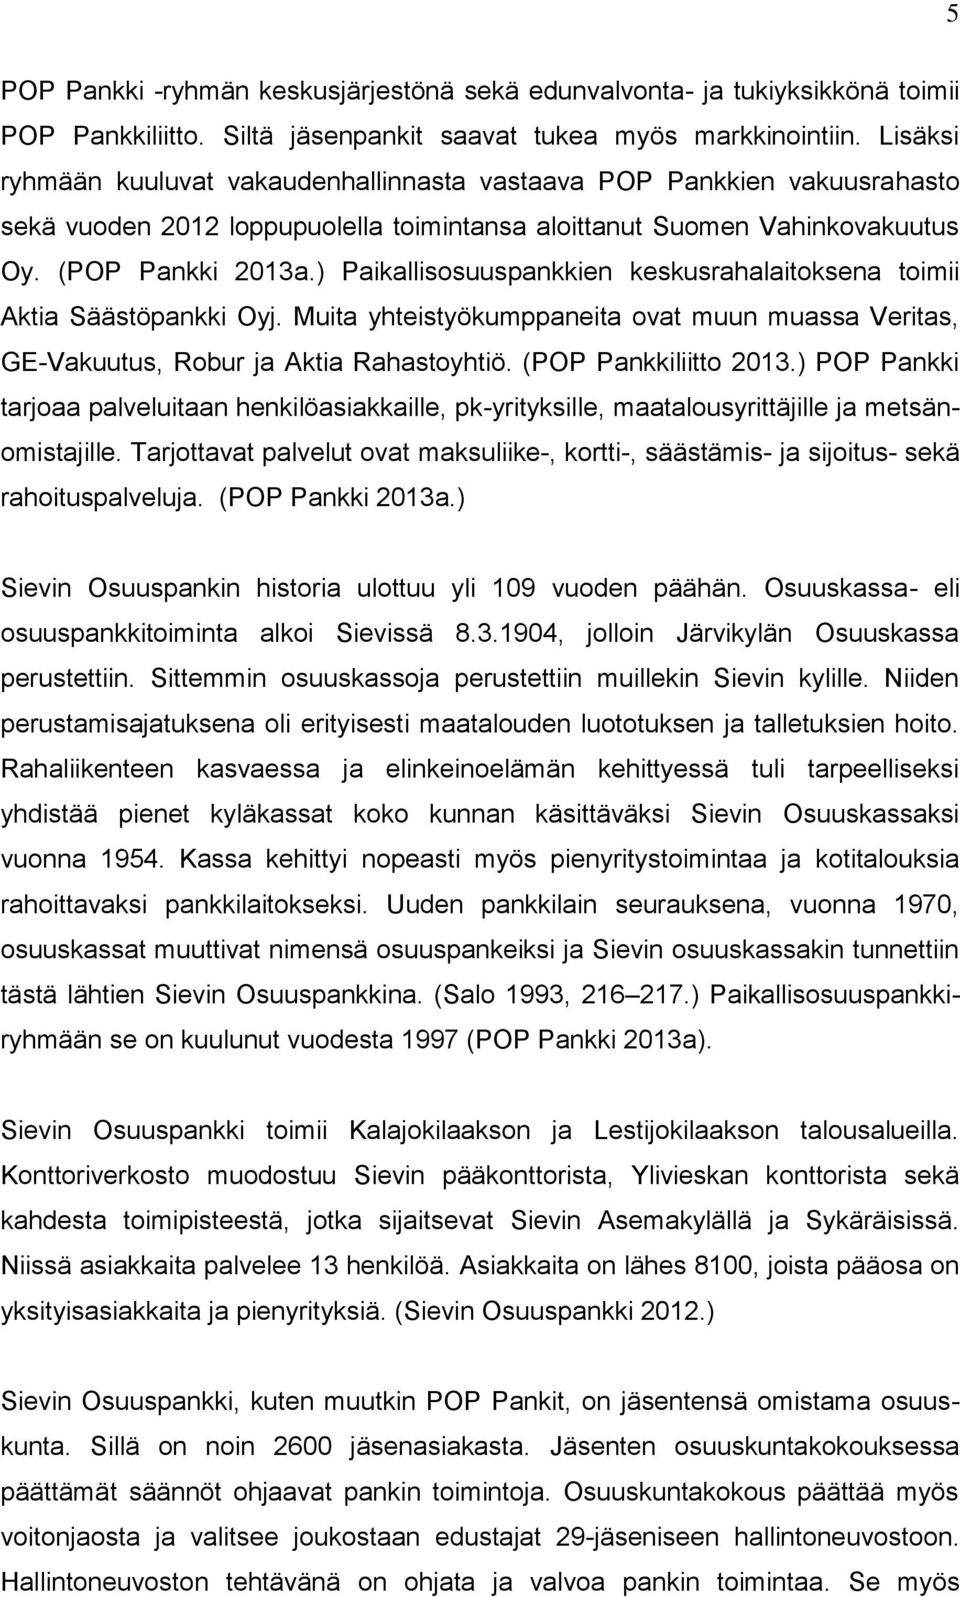 ) Paikallisosuuspankkien keskusrahalaitoksena toimii Aktia Säästöpankki Oyj. Muita yhteistyökumppaneita ovat muun muassa Veritas, GE-Vakuutus, Robur ja Aktia Rahastoyhtiö. (POP Pankkiliitto 2013.